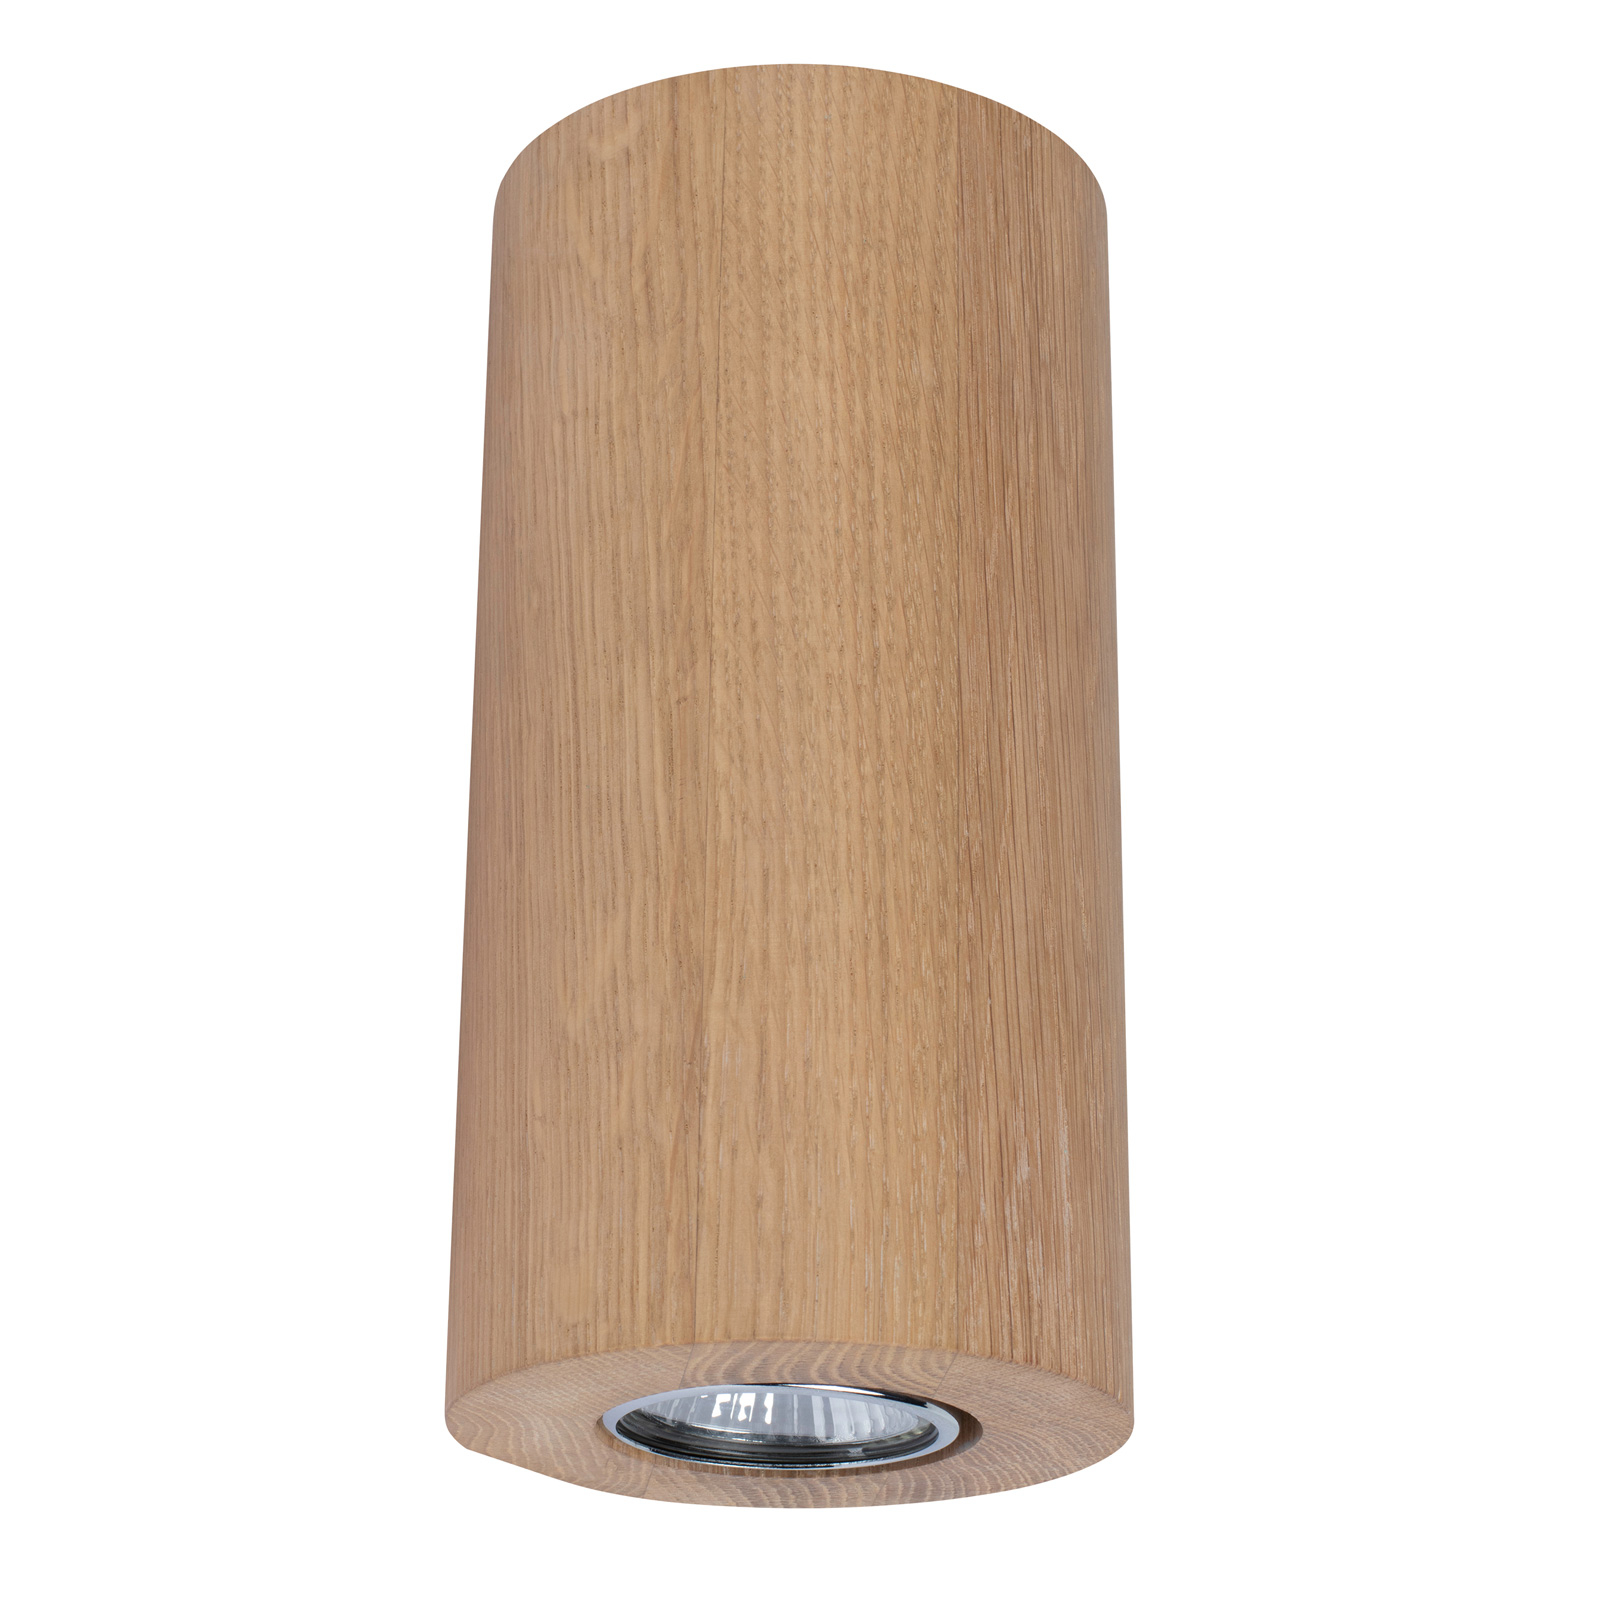 Vegglampe Wooddream 1 lyskilde eik, rund, 20 cm